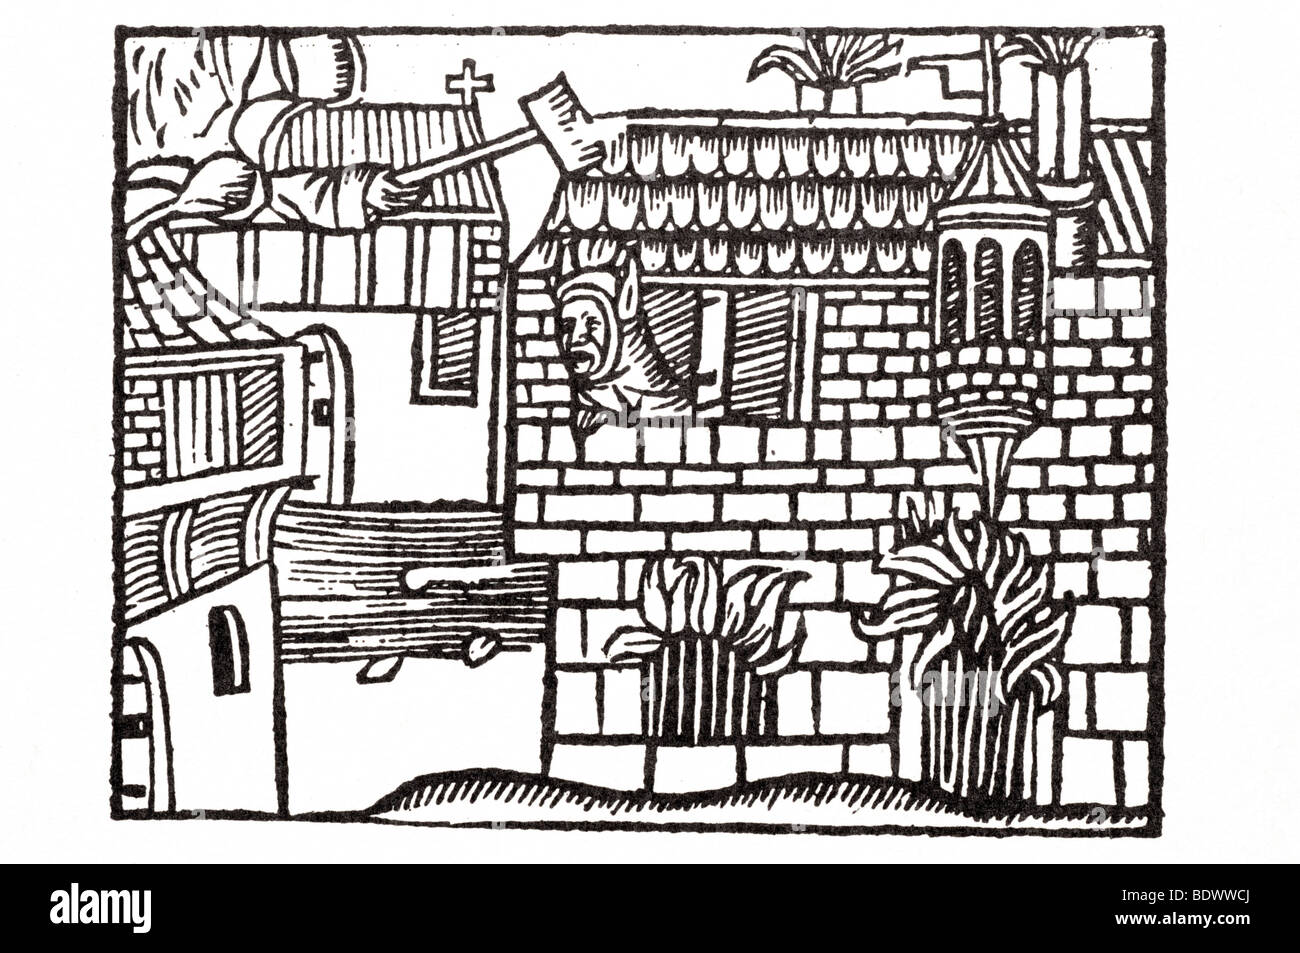 w de Worde 1517 Robert der Teufel ein Haus und eine Kirche eine Hand aus einer Wolke an der Spitze ein Narr, der ye ist einen Hammer nach unten schwenken Stockfoto